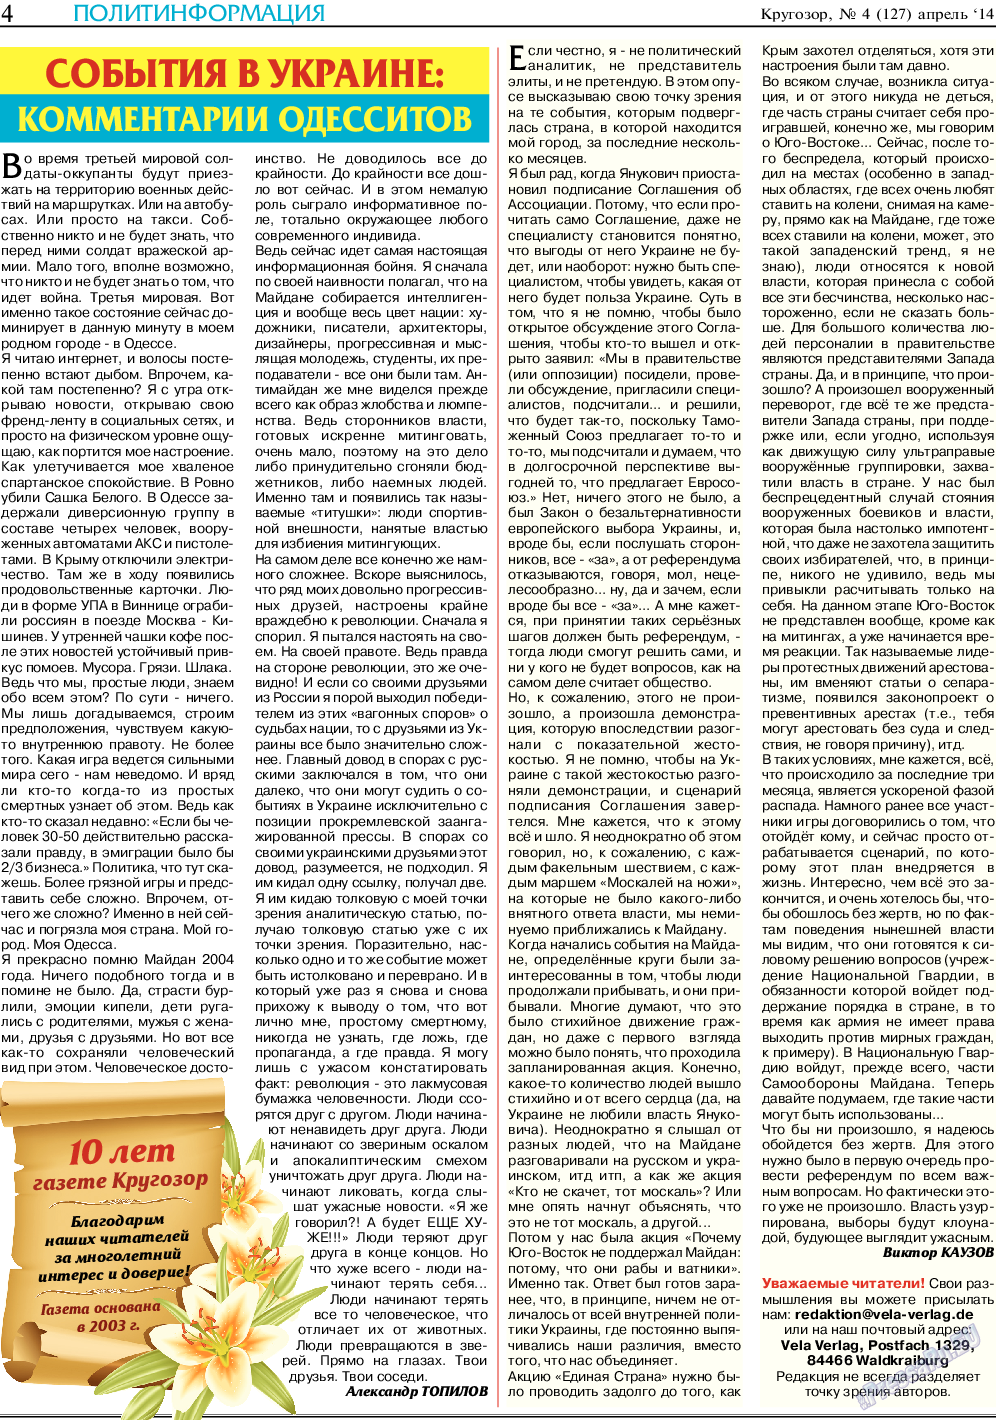 Кругозор (газета). 2014 год, номер 4, стр. 4